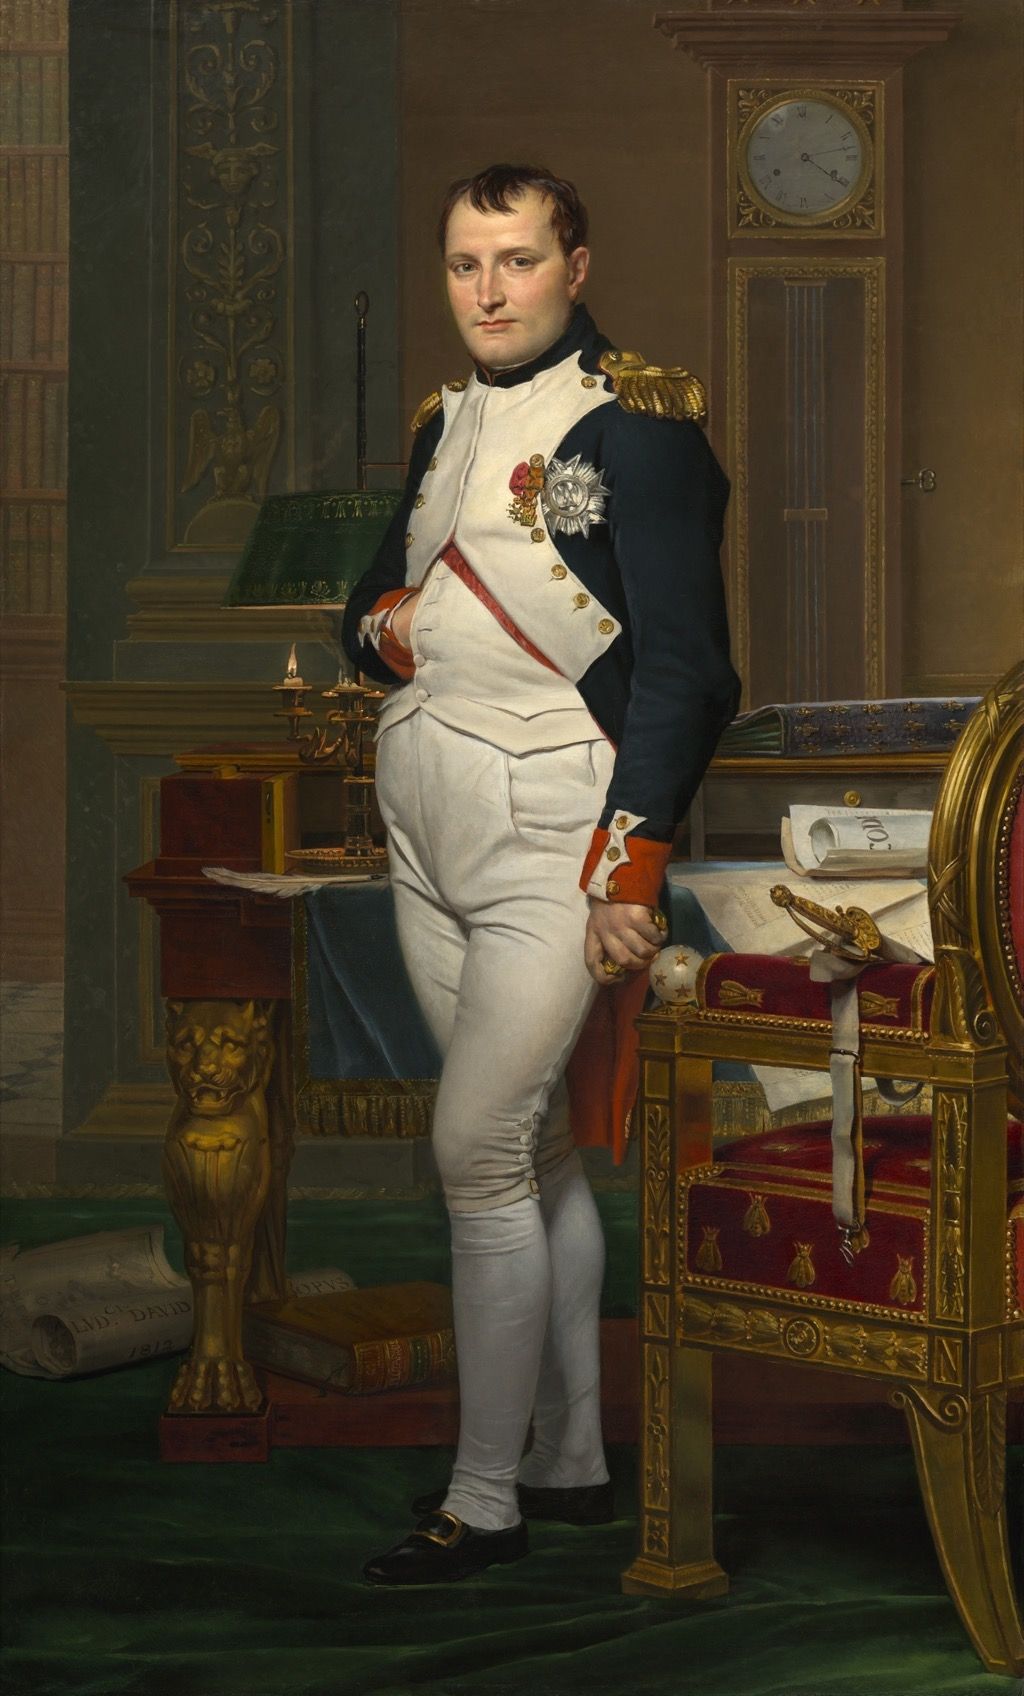 Napoléon xúc phạm các chính trị gia